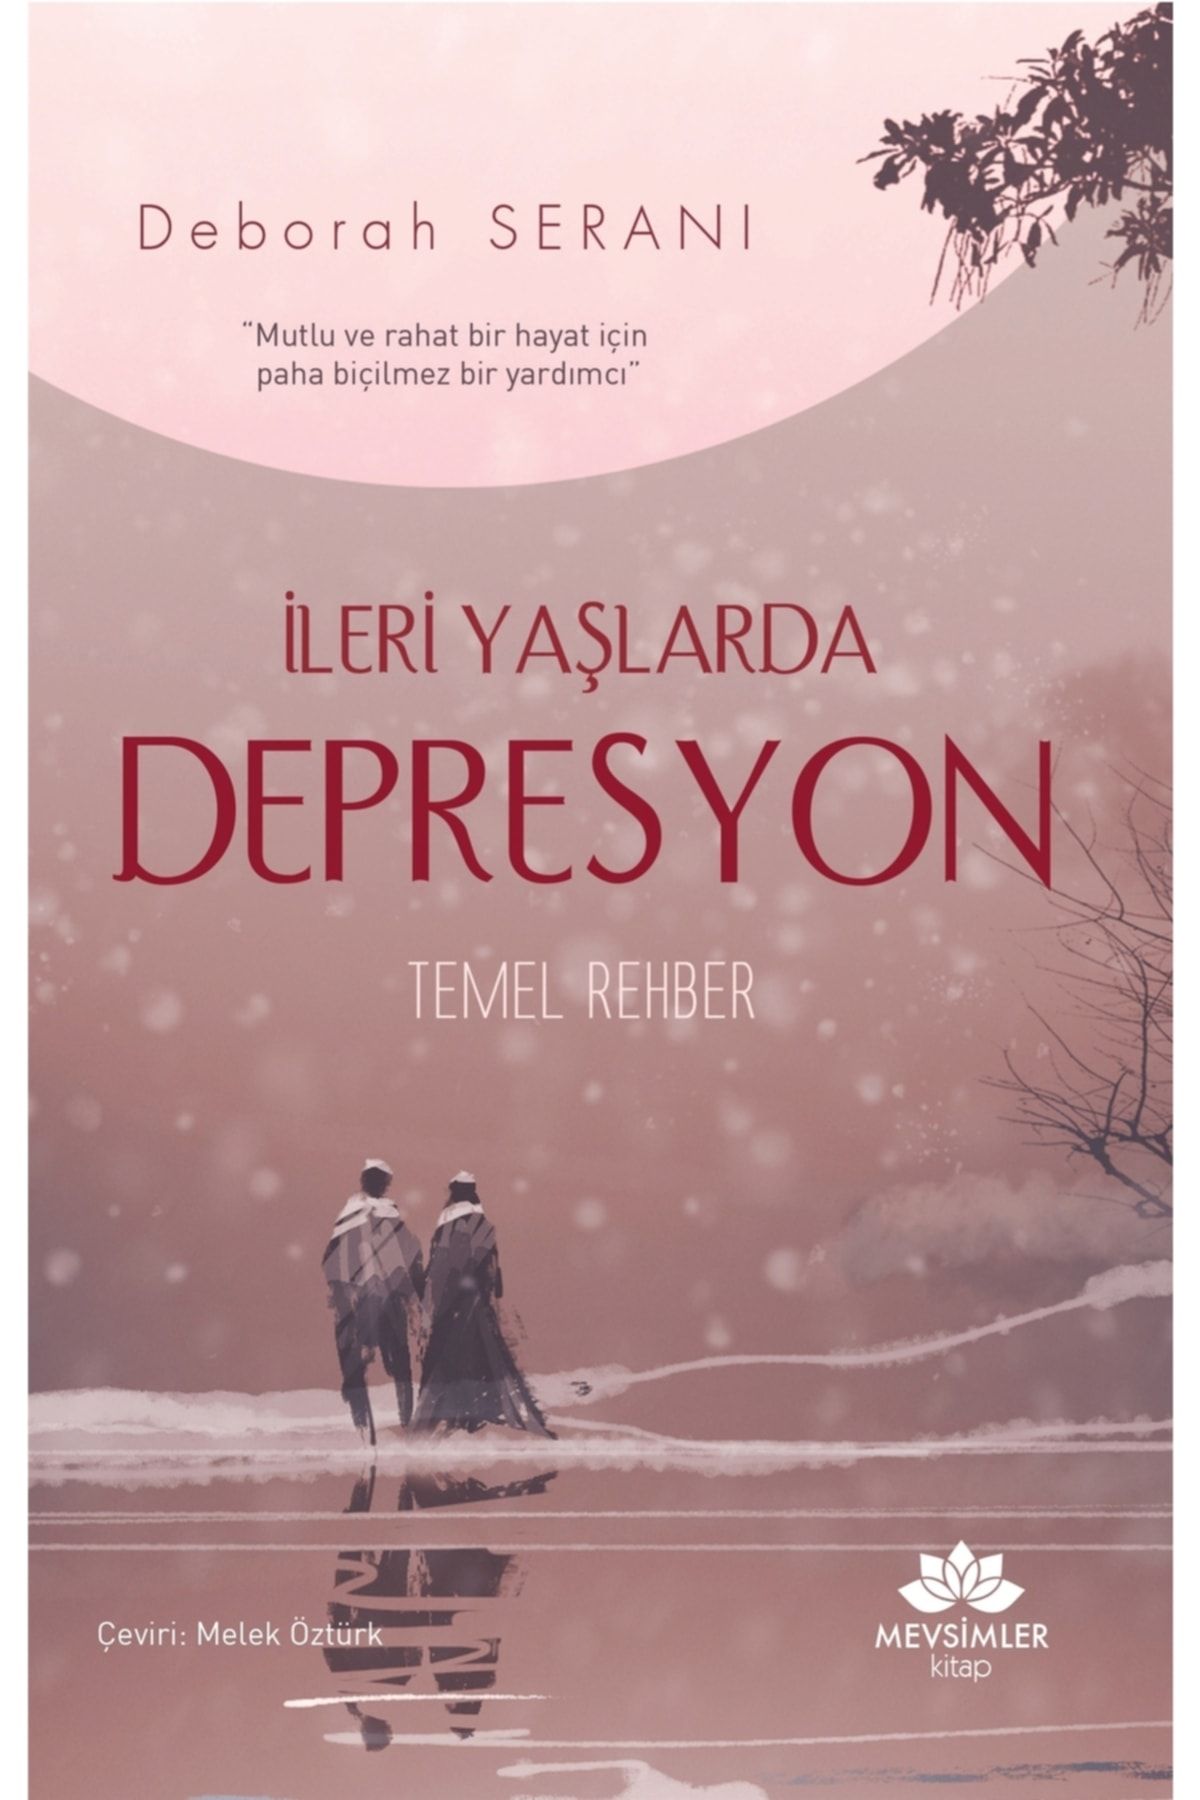 Mevsimler Kitap İleri Yaşlarda Depresyon Temel Rehber - Deborah Serani